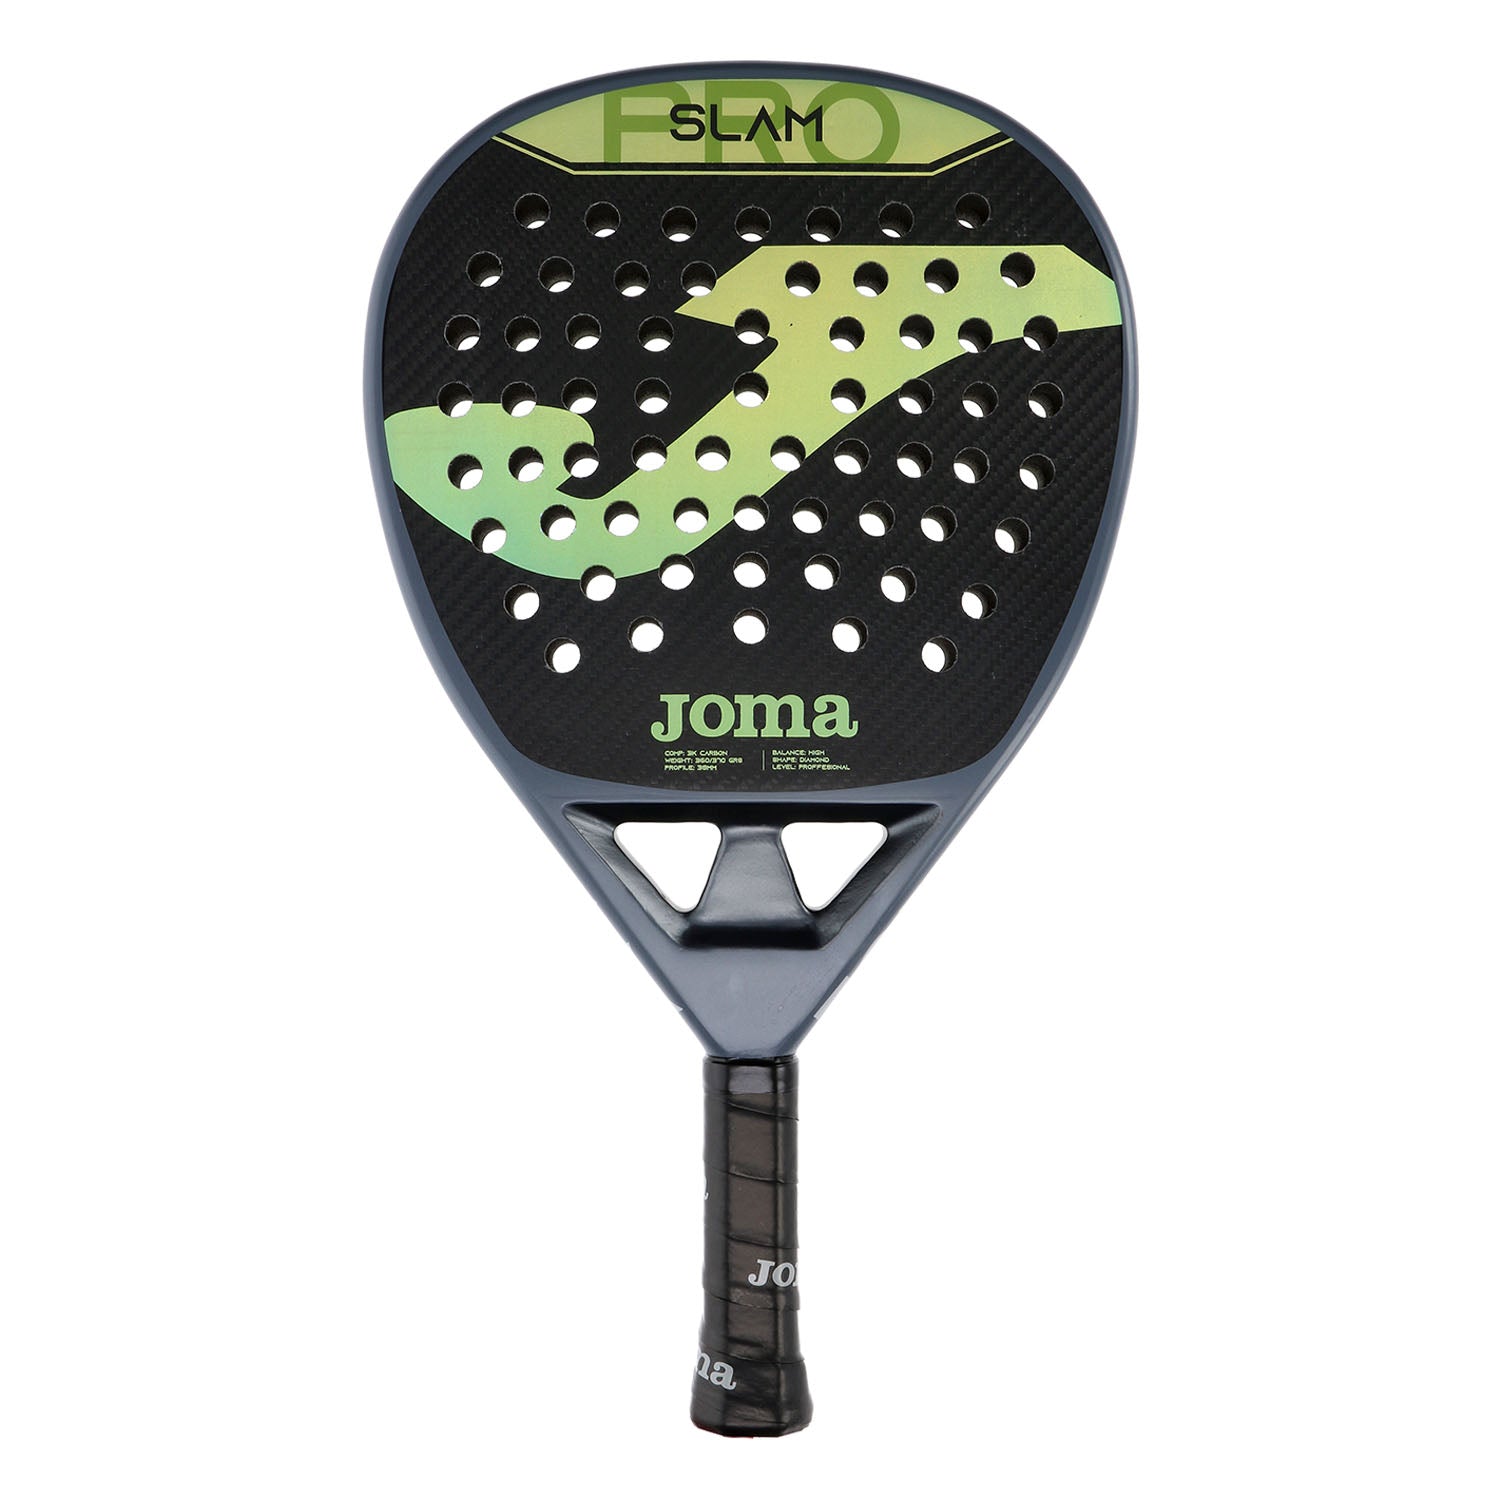 Joma Slam Pro grey green racket